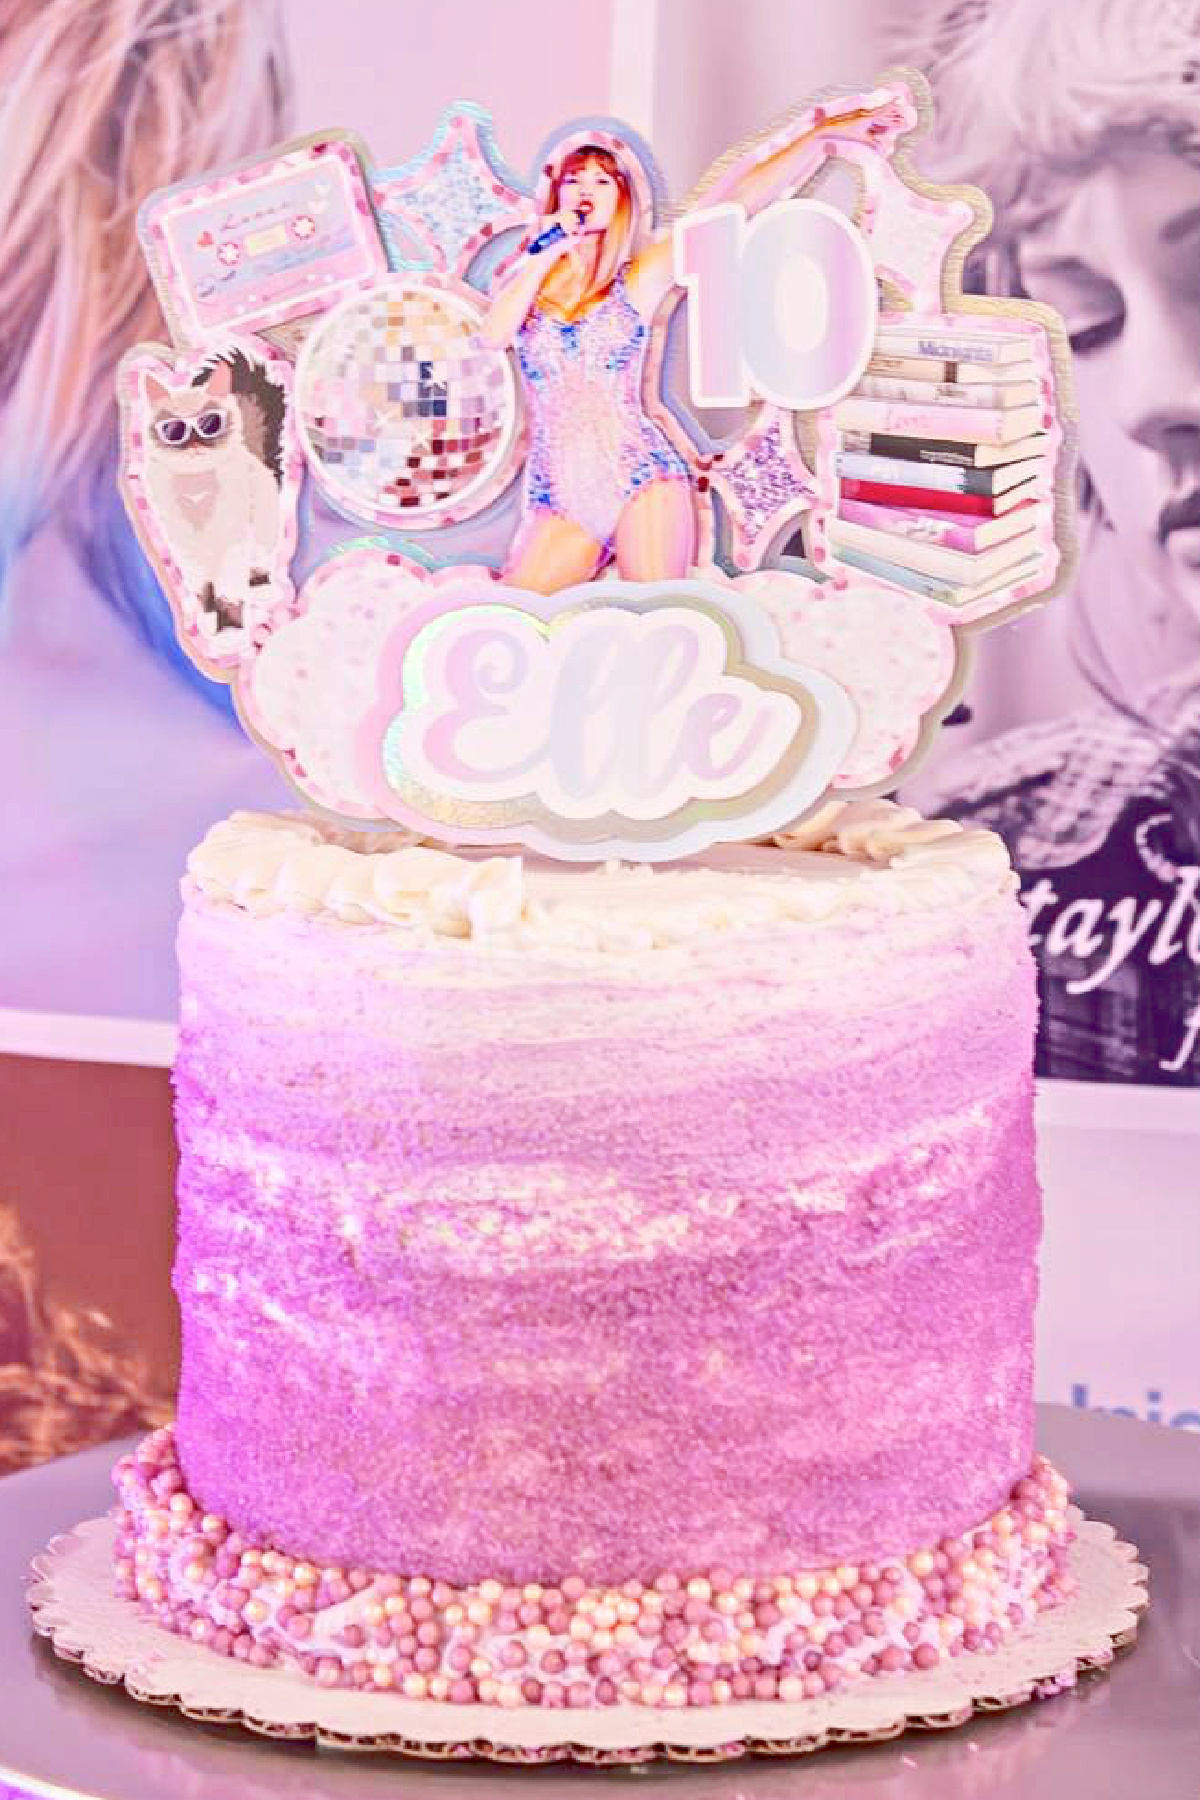 Taylor Swift Eras Tour Birthday Cake